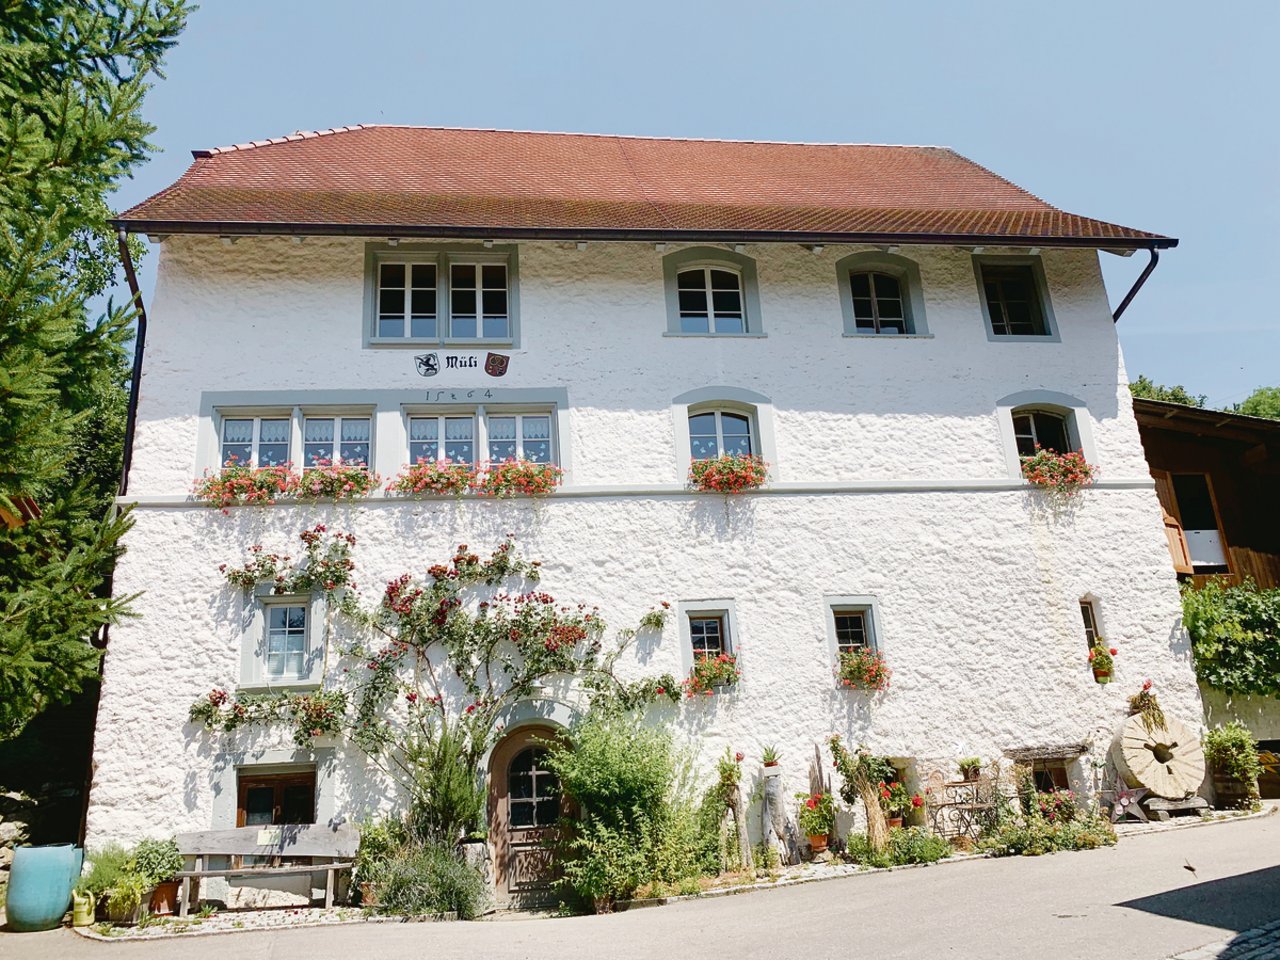 Die historische Müli Geuensee wurde bereits 1454 erwähnt. Im Jahr 2005 wurde sie sorgfältig aussen renoviert. 